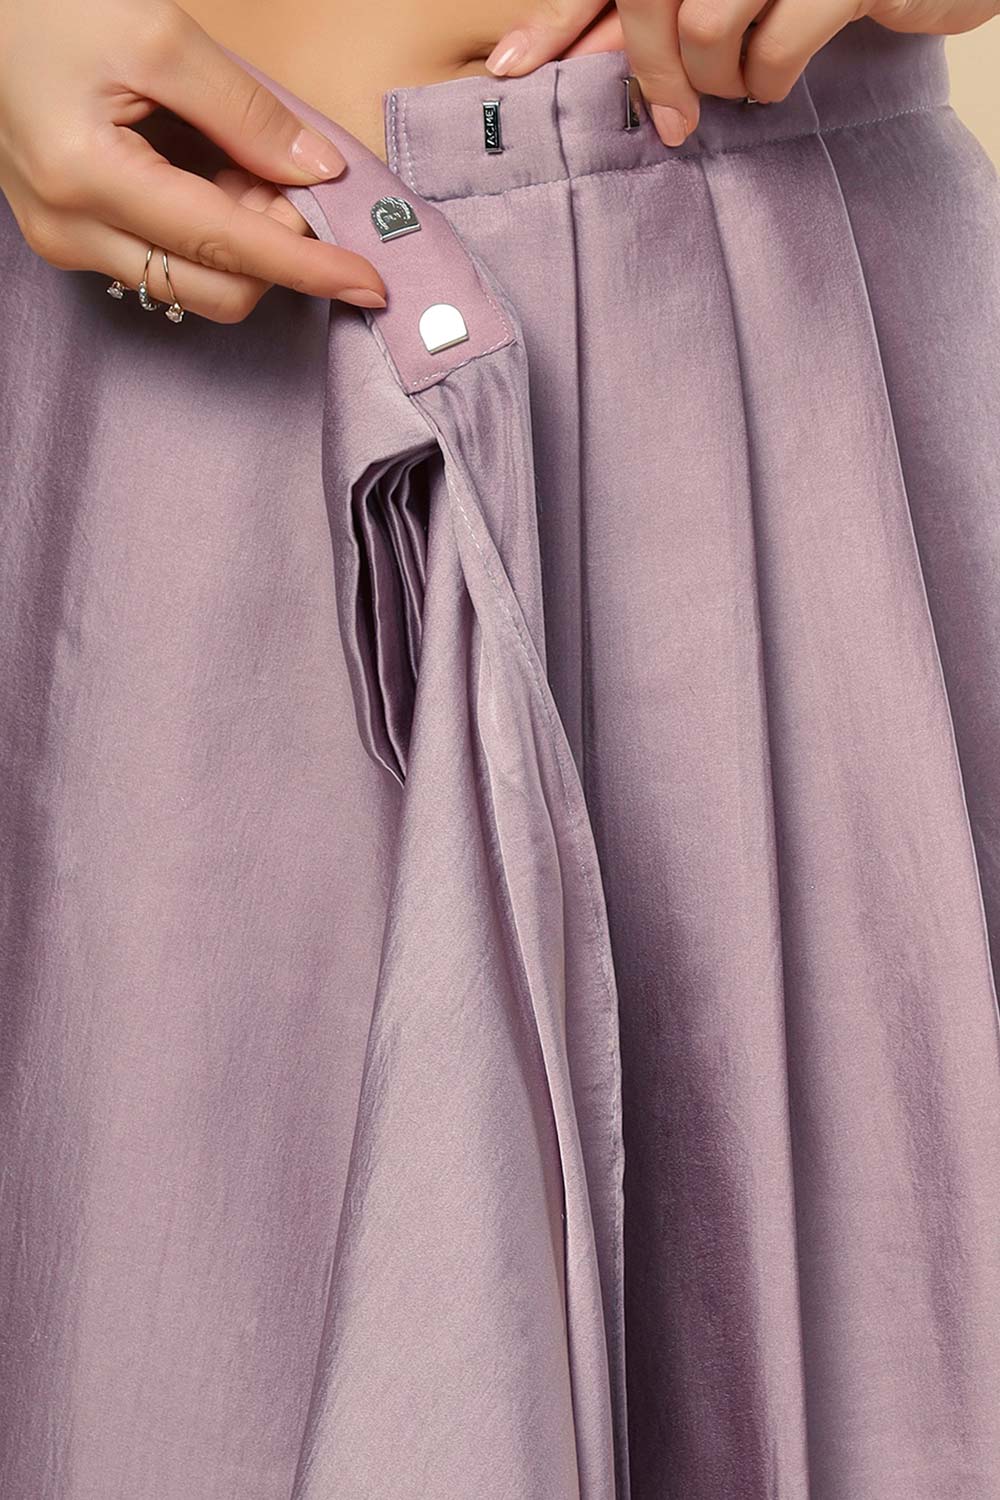 Neri Violet Grey Silk One Minute Saree Set with Shimmer Blouse & Belt